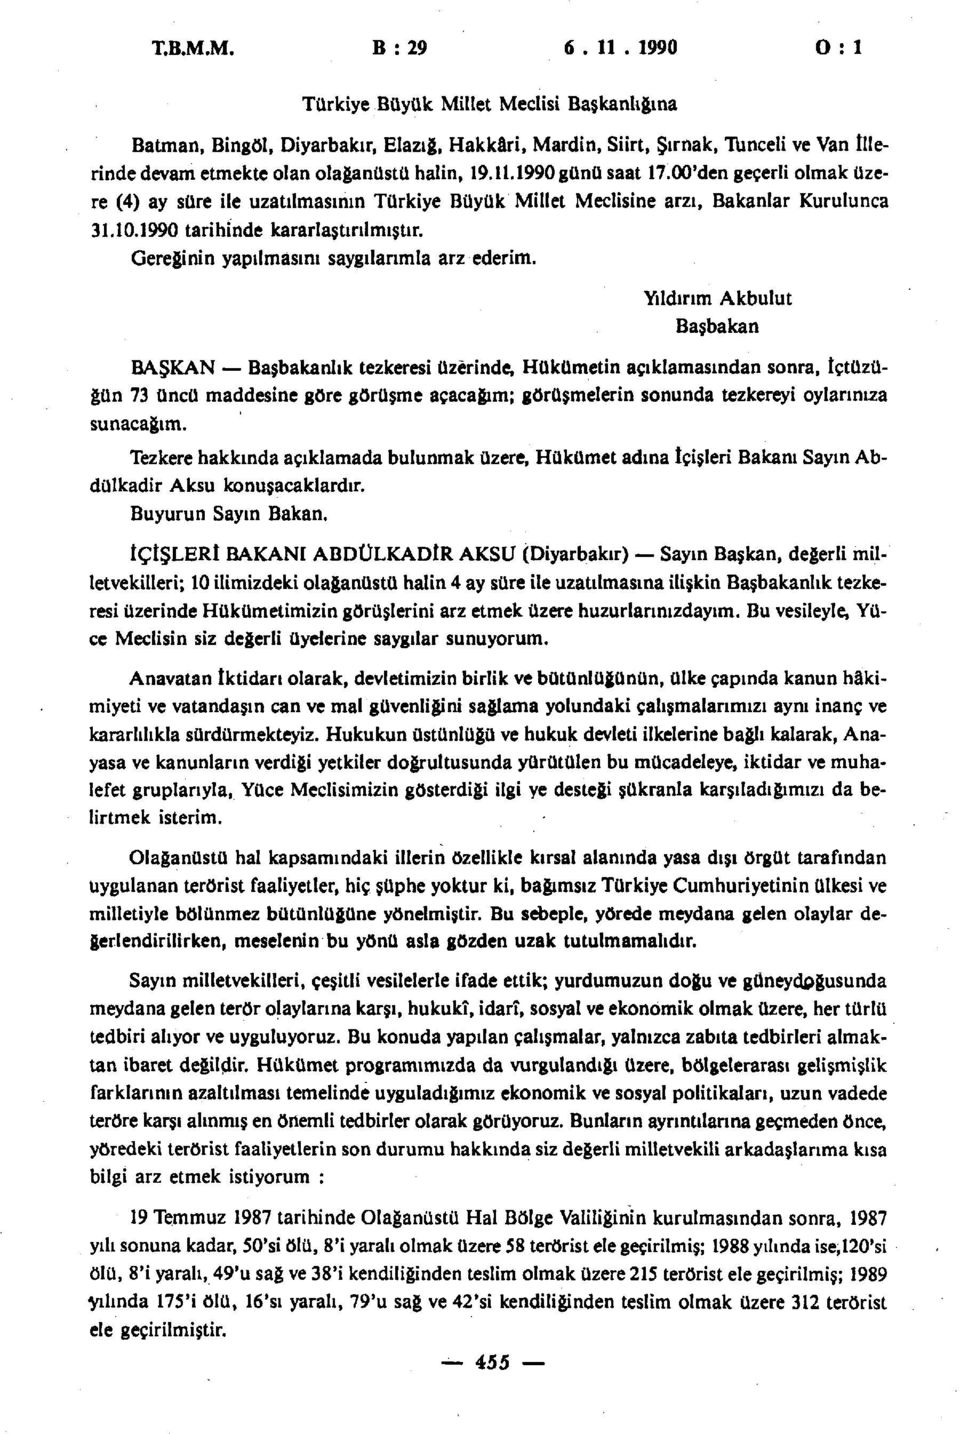 1990 günü saat 17.00'den geçerli olmak üzere (4) ay süre ile uzatılmasının Türkiye Büyük Millet Meclisine arzı, Bakanlar Kurulunca 31.10.1990 tarihinde kararlaştırılmıştır.